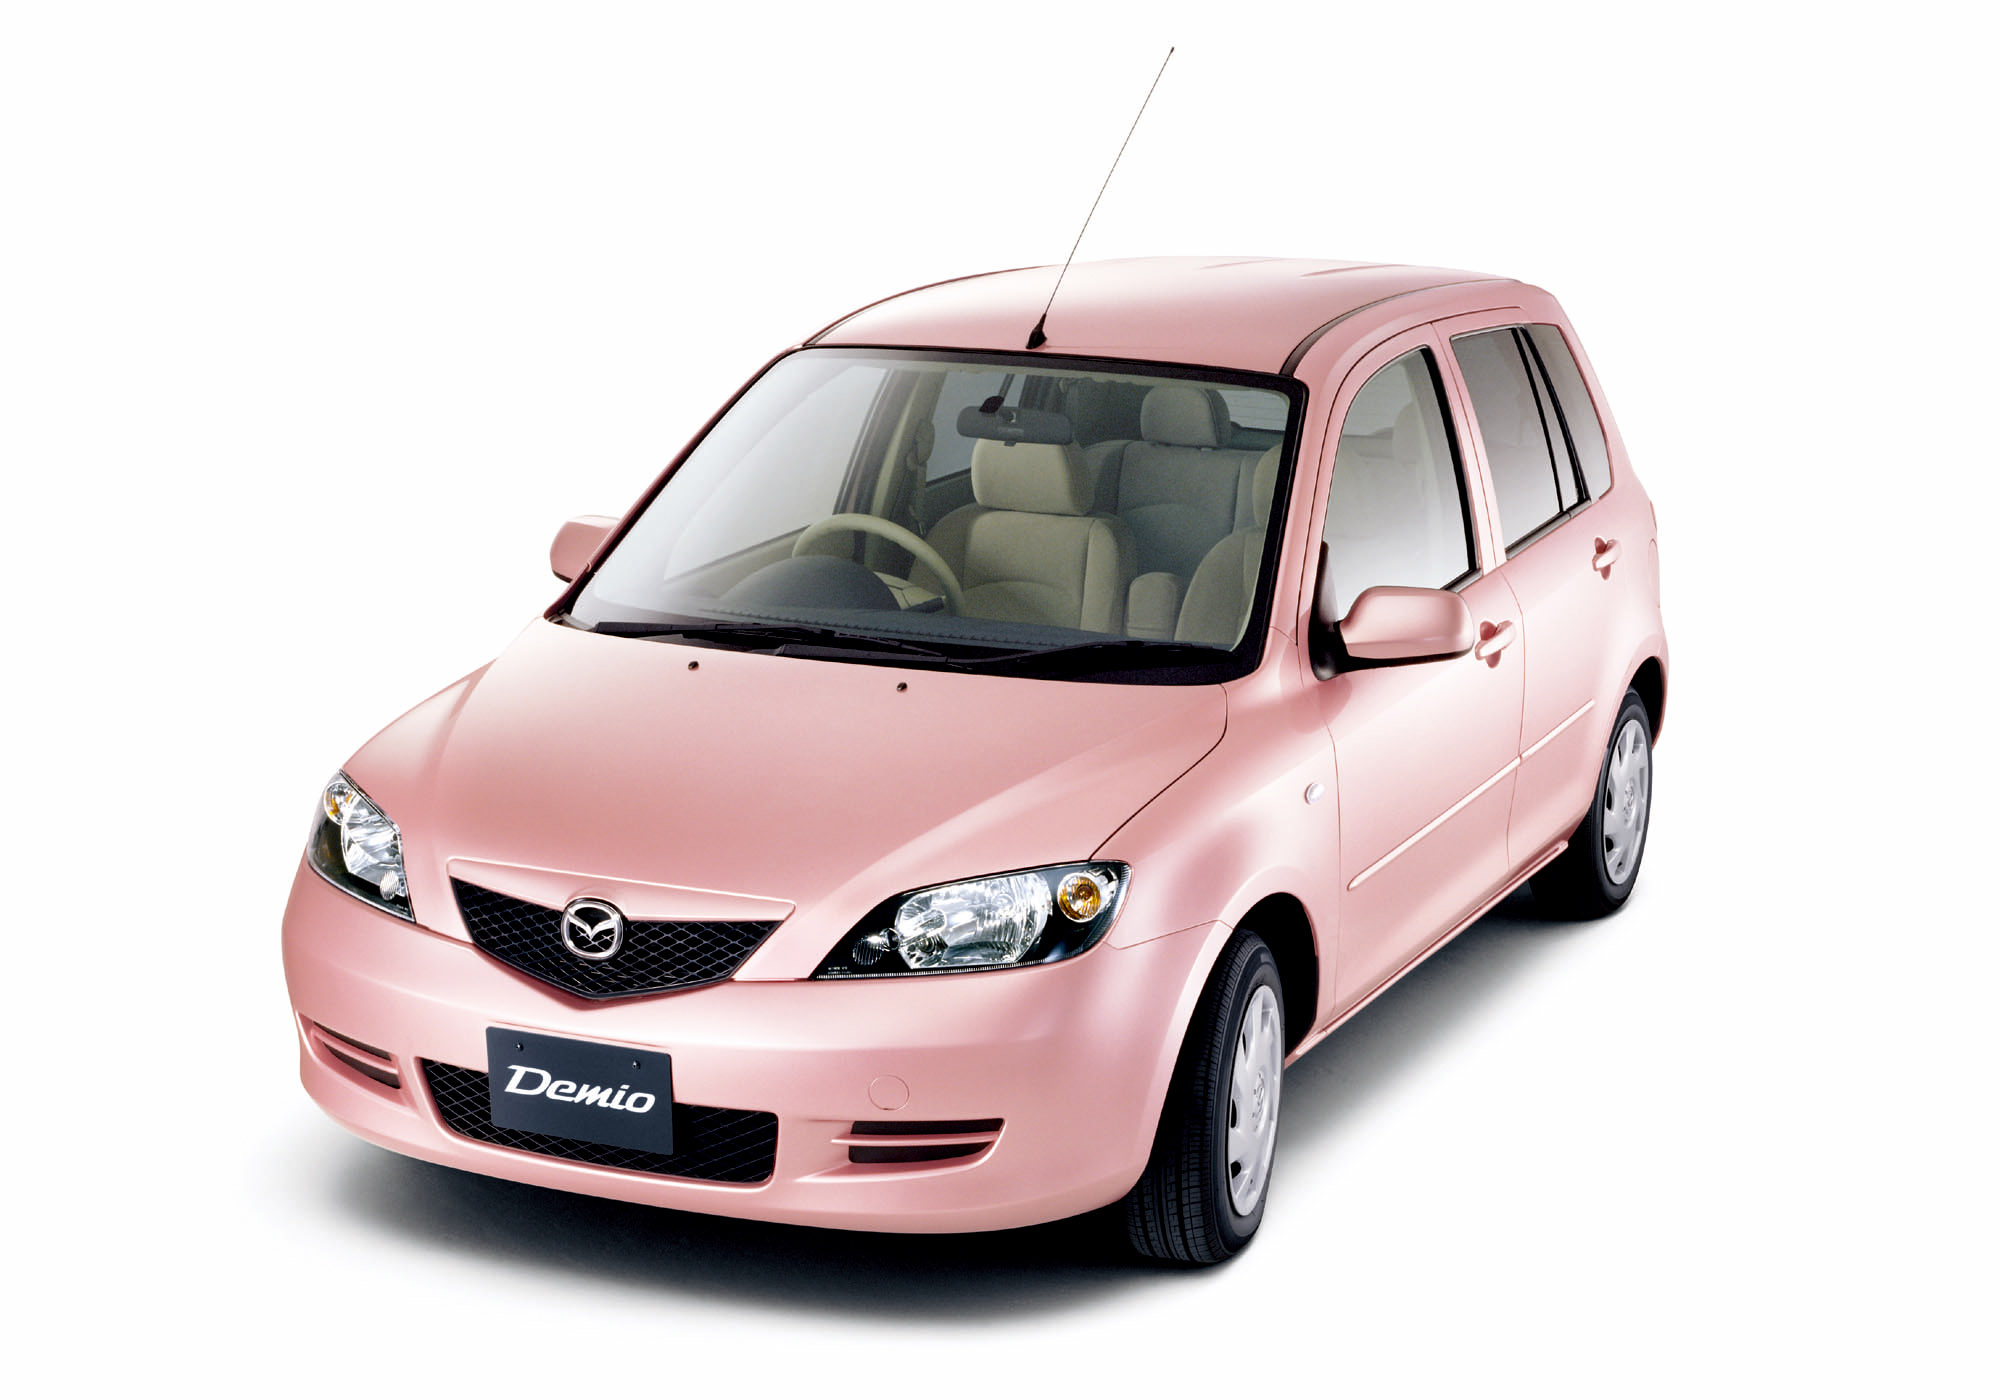 Mazda Demio Stardust Pink Limited Edition